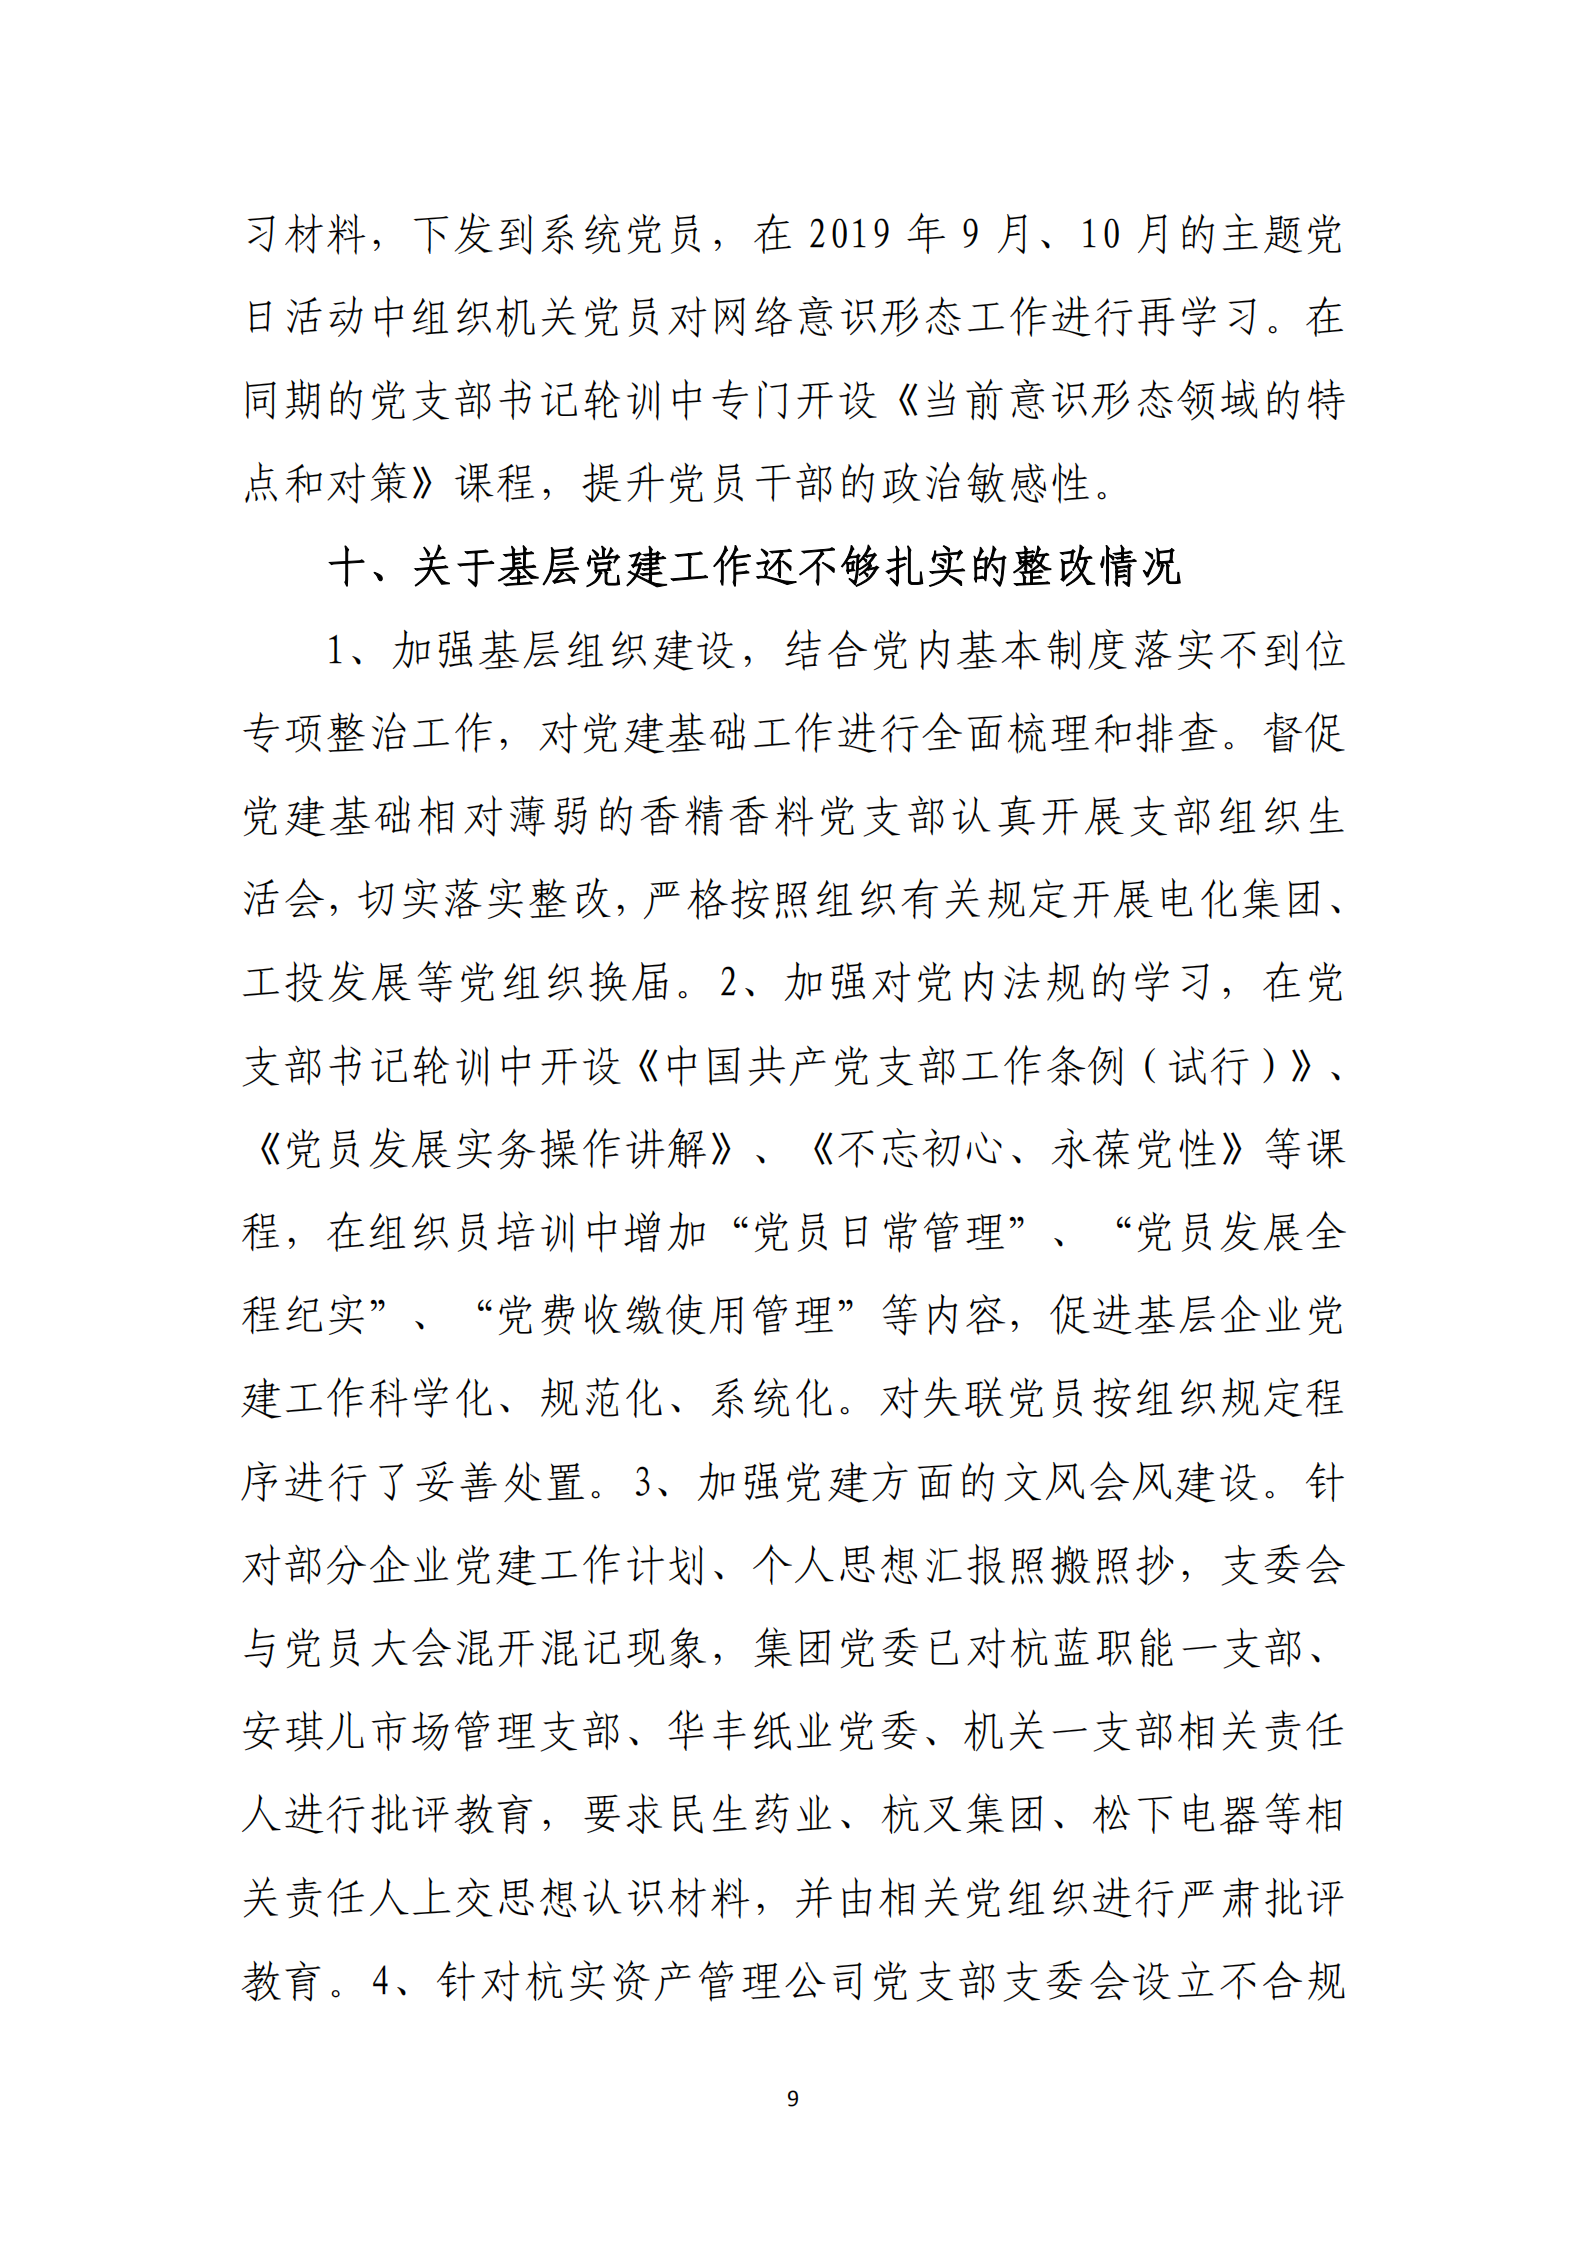 博乐体育网页【中国】有限公司党委关于巡察整改情况的通报_08.png